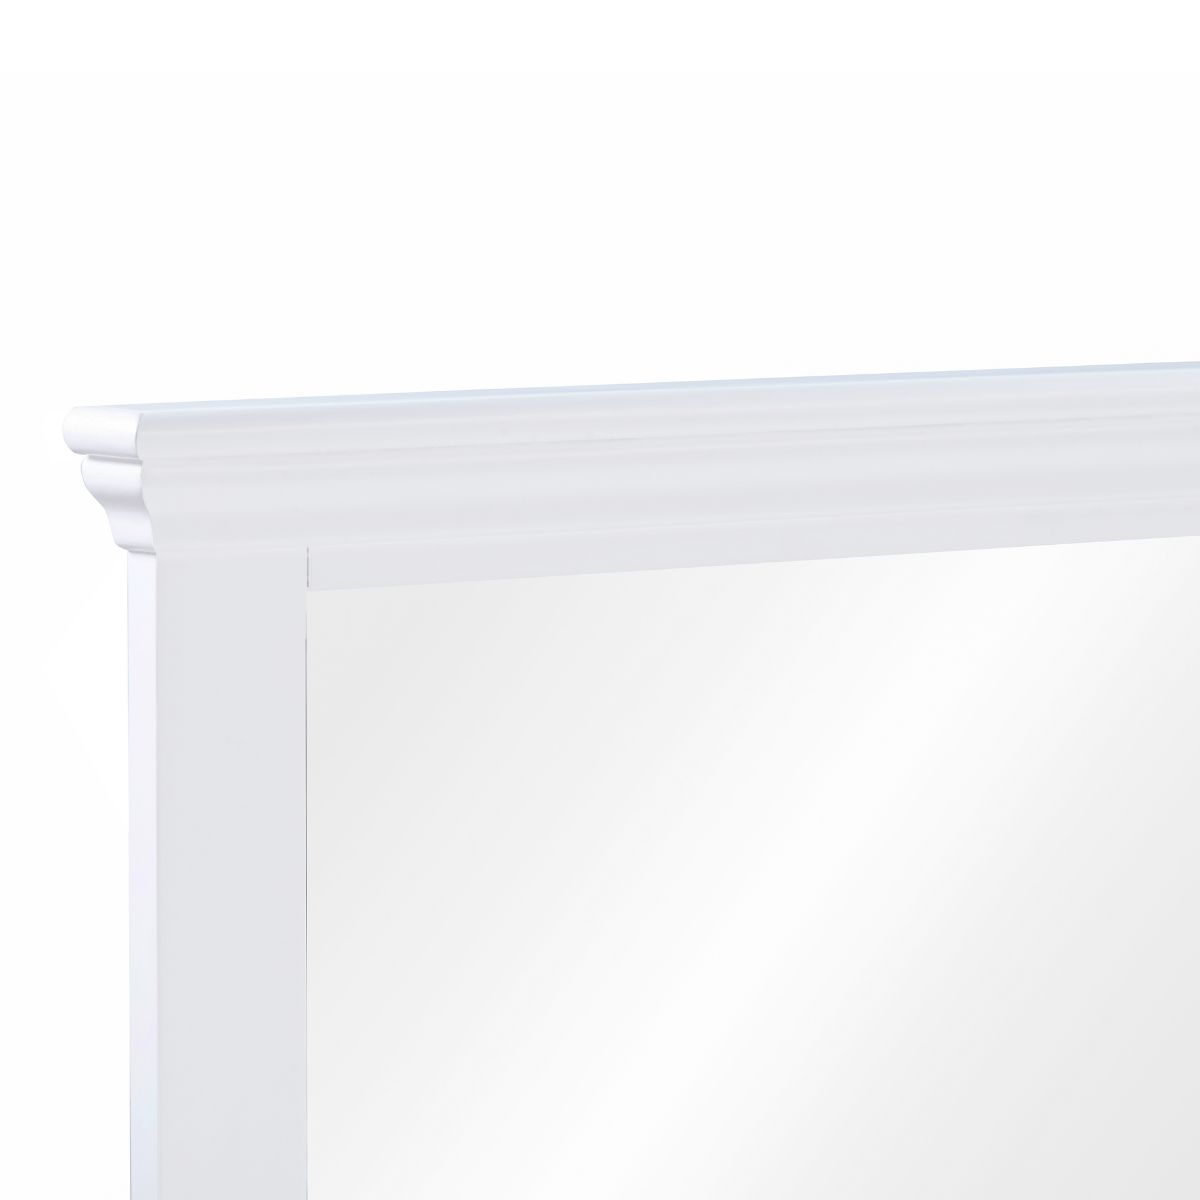 Lucilla White Wooden Dresser Mirror - 2